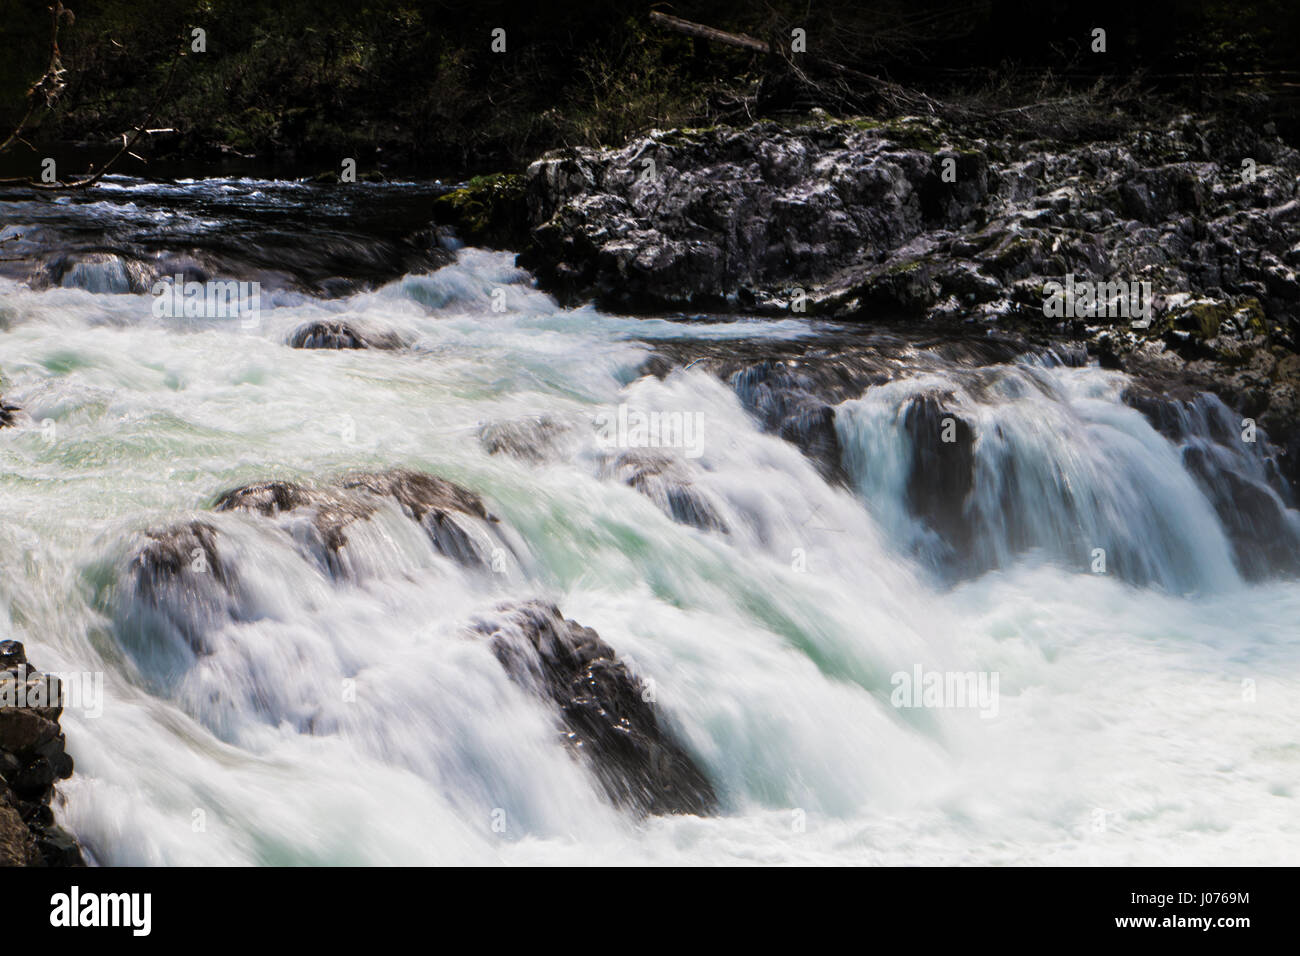 L'acqua scorre oltre il bordo roccioso di una cascata. Foto Stock